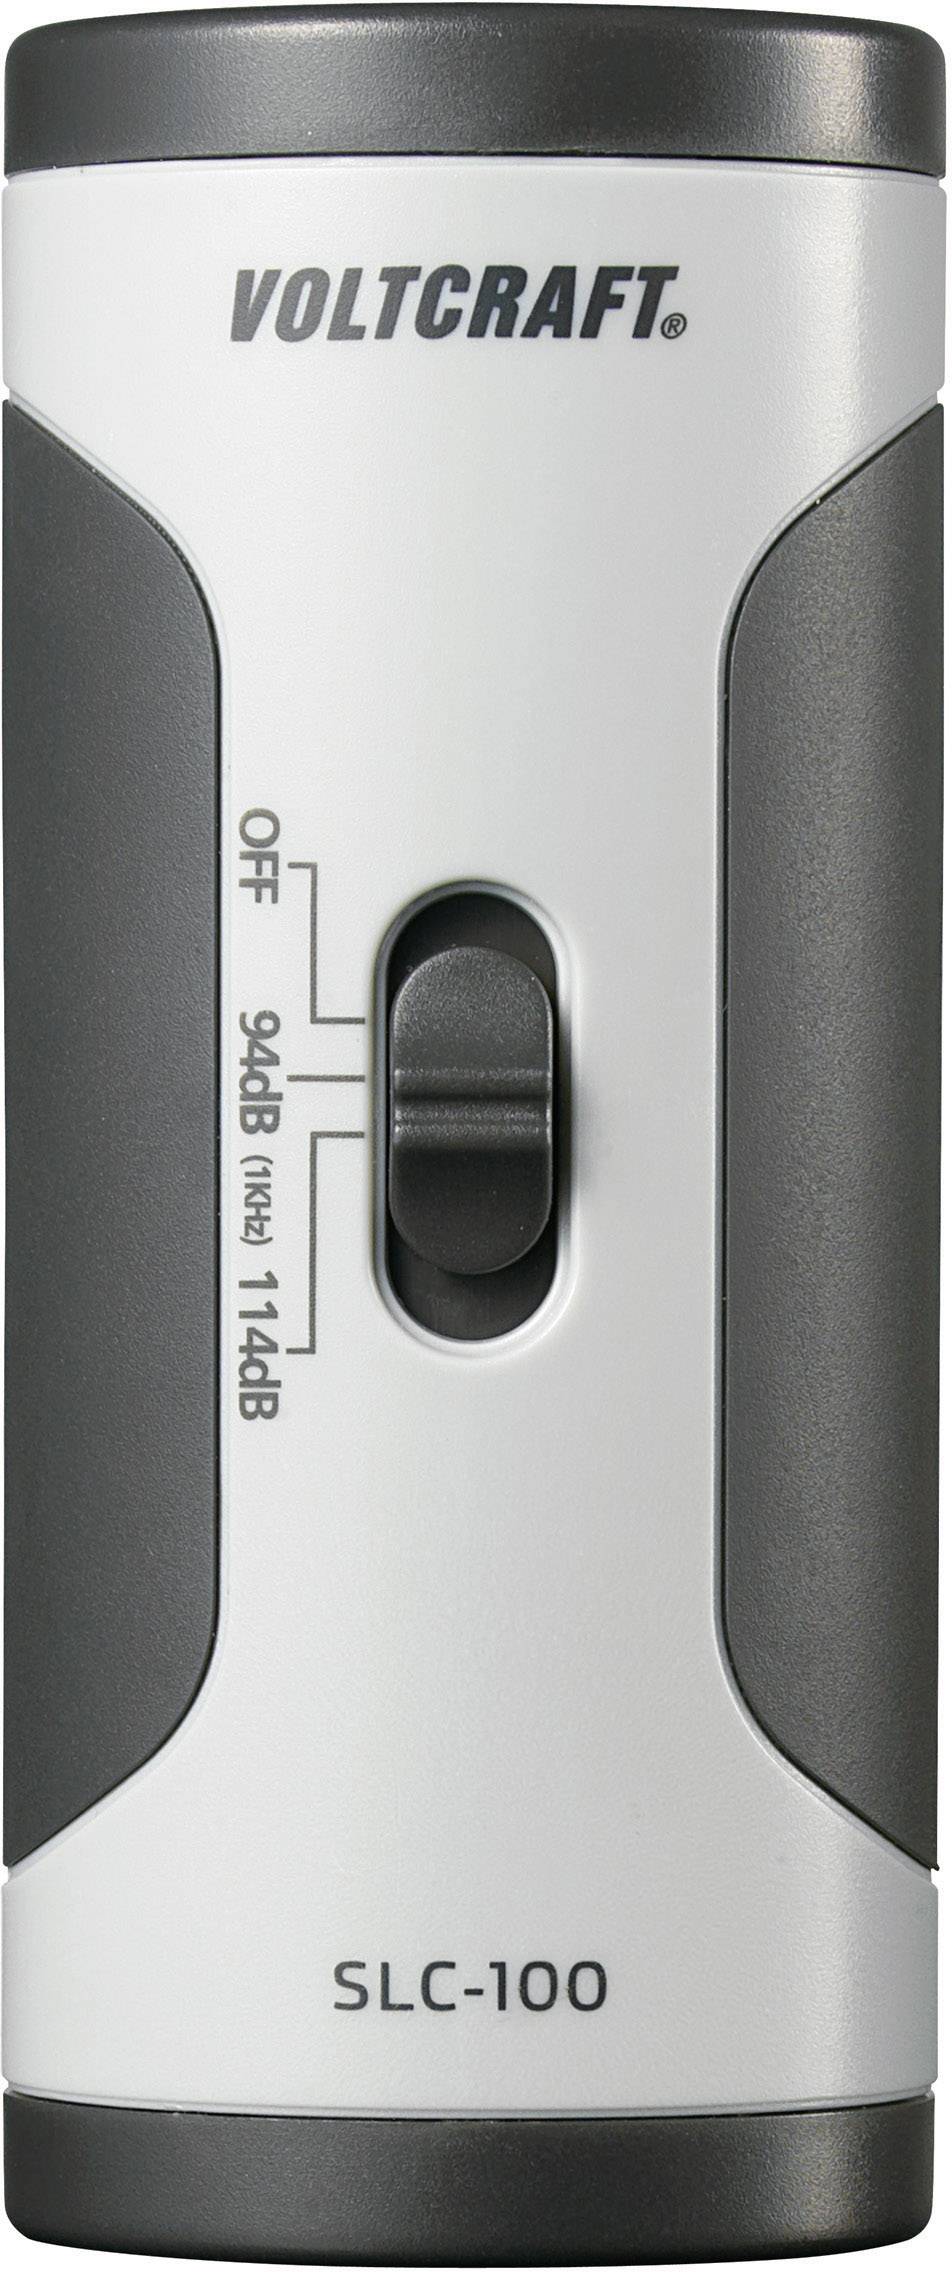 VOLTCRAFT SLC-100 Schallpegel-Kalibrator zum Kalibrieren von Schallpegel-Messgeräten, Für Mikrofon